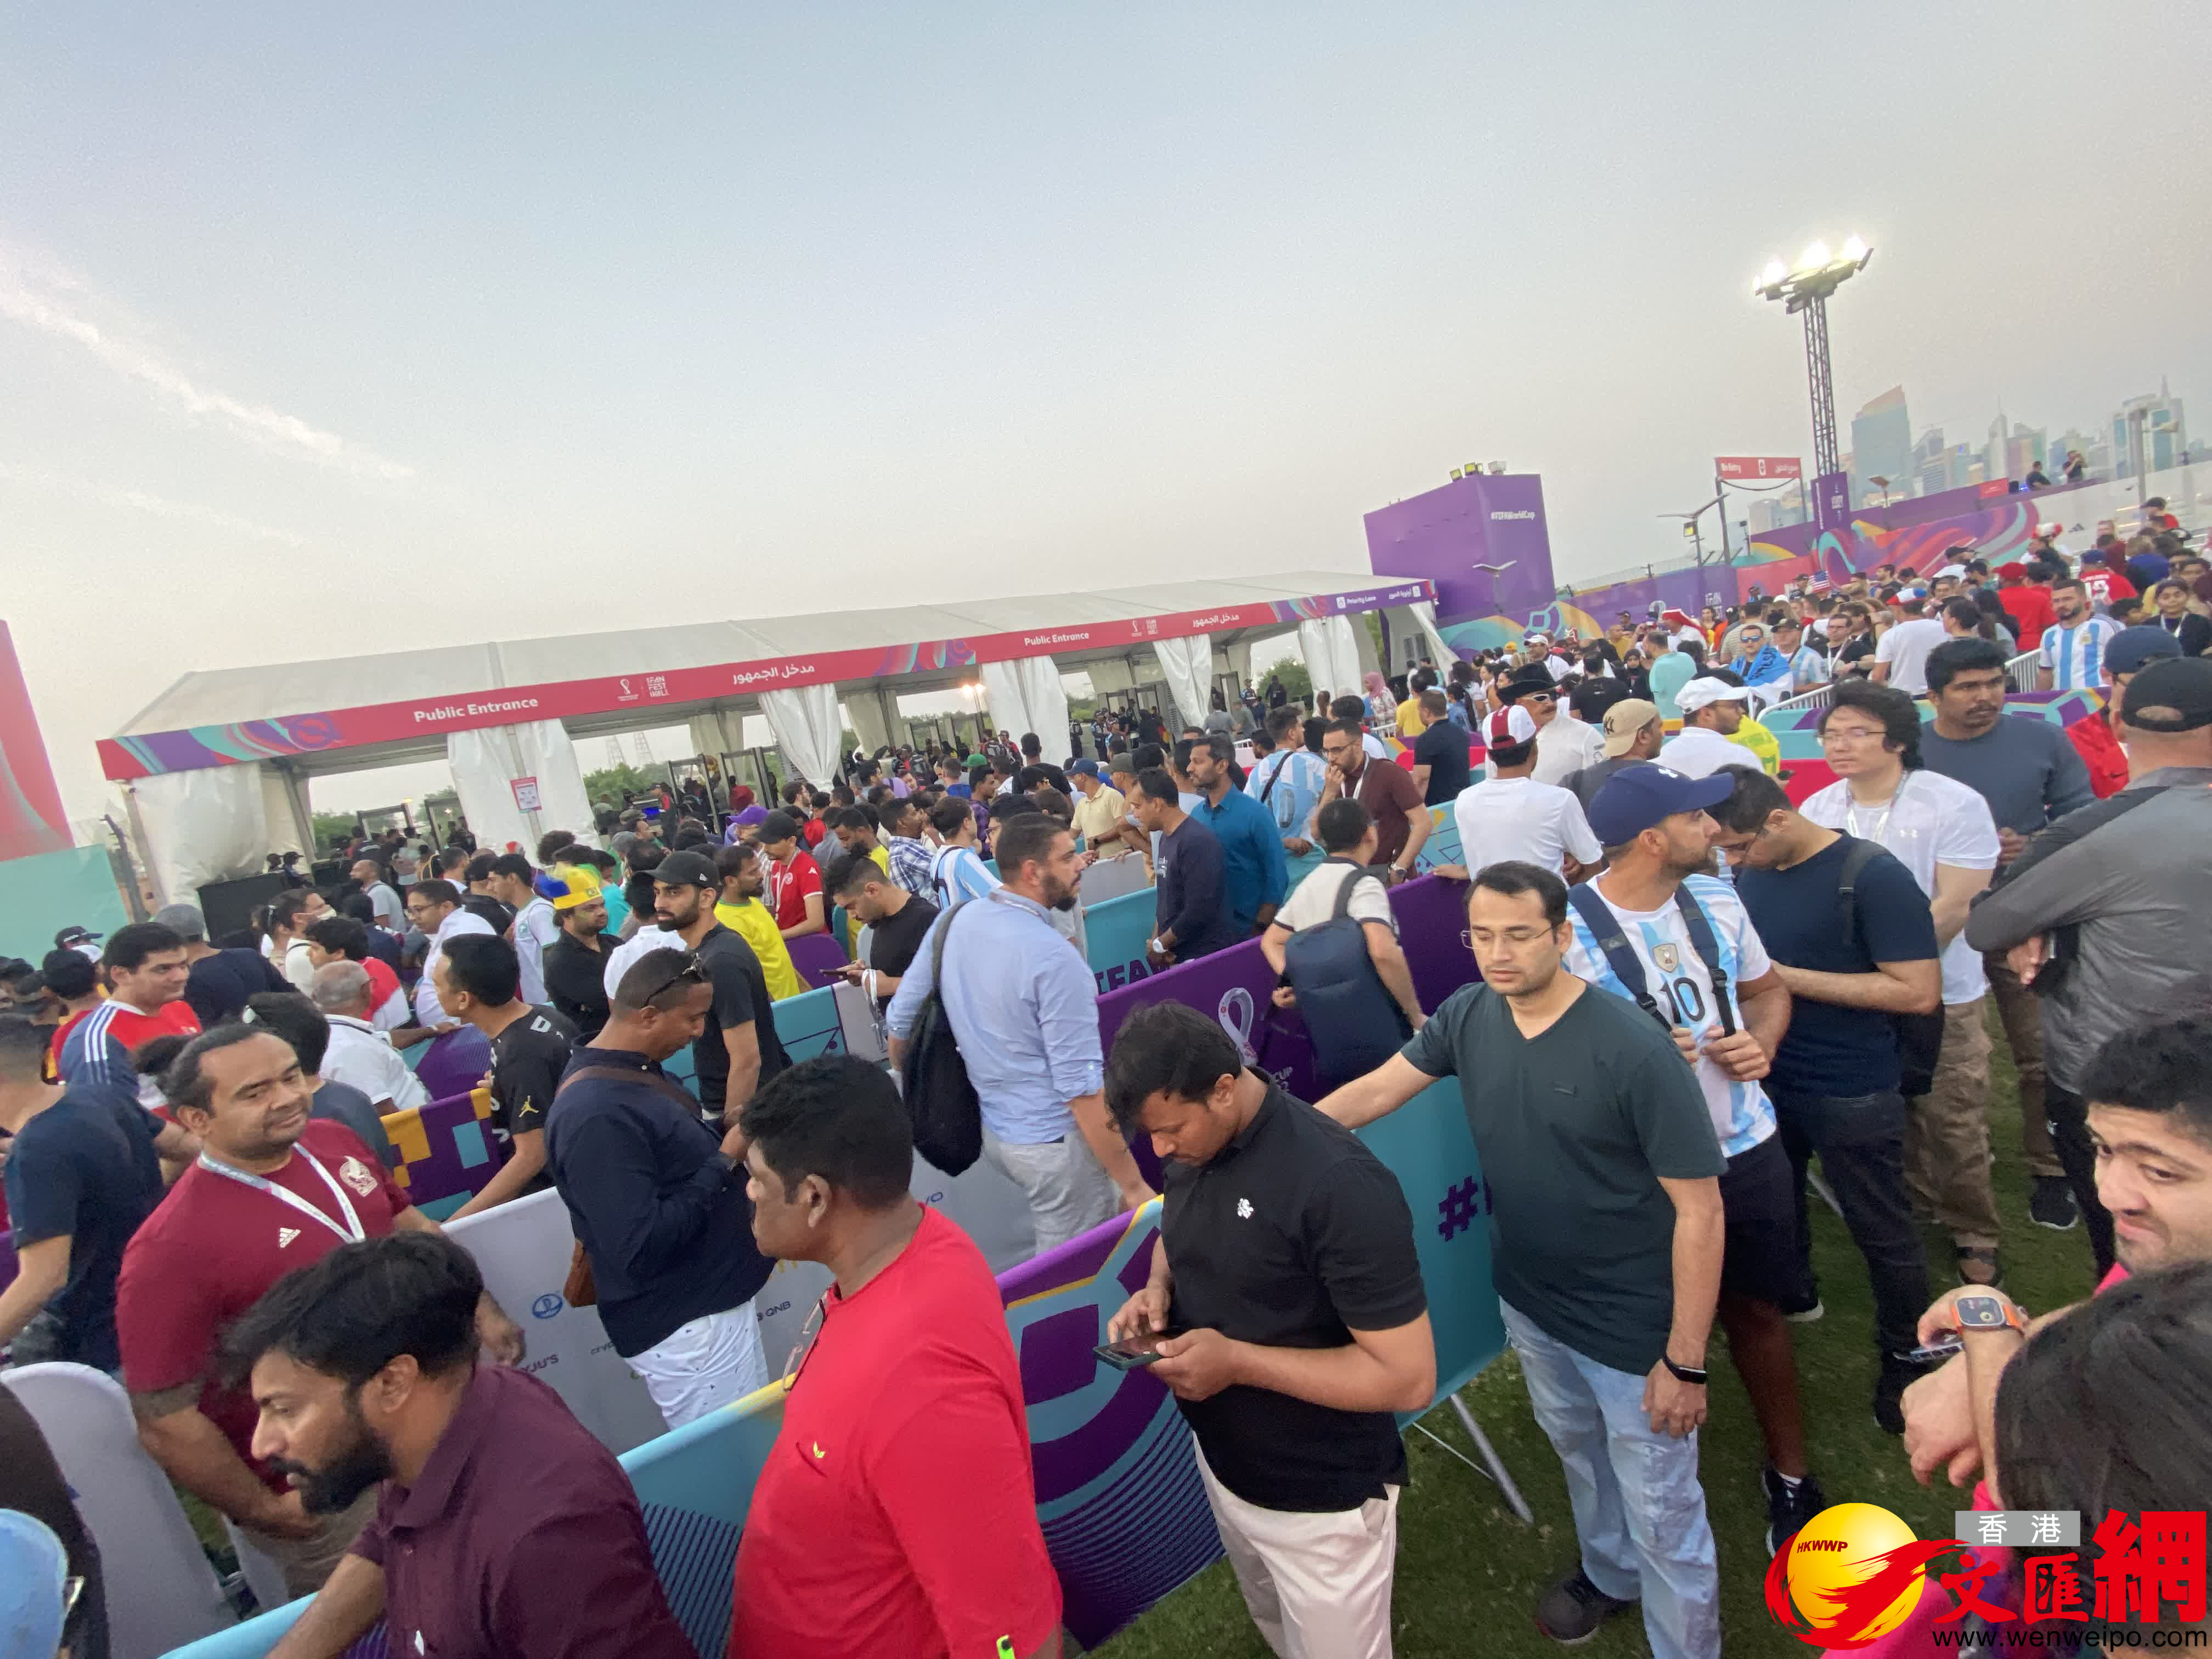 卡塔爾天下盃｜球迷節現「大混亂」　入場須輪候三小時